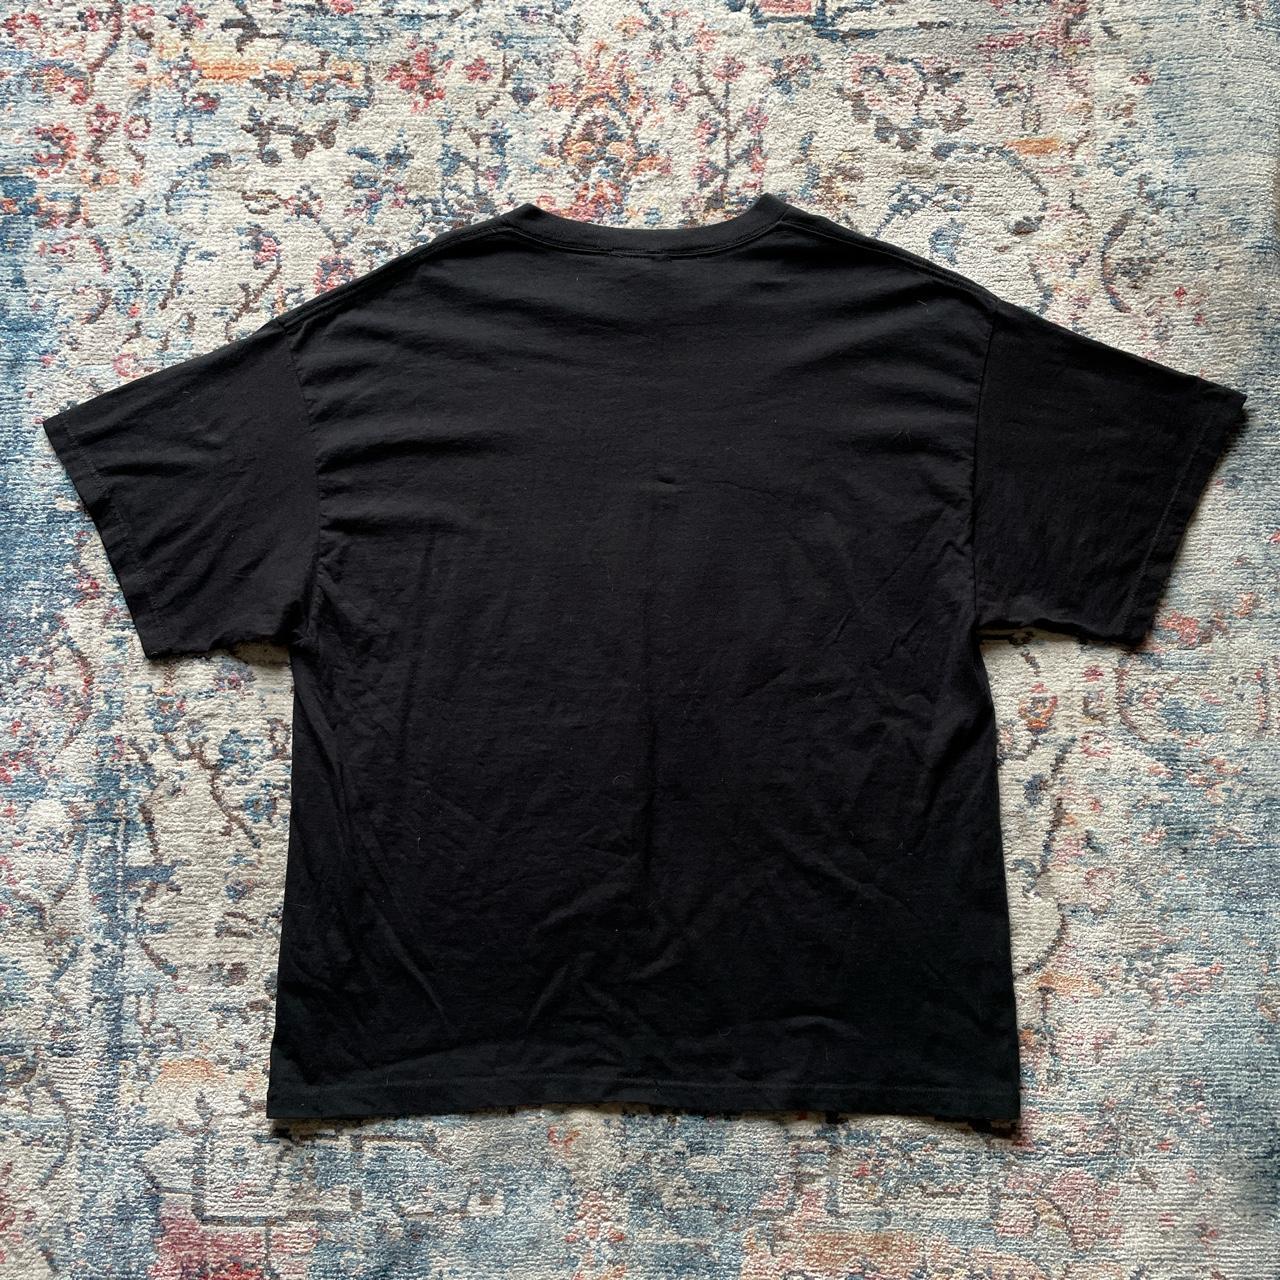 Vintage NFL Steelers Super Bowl black t-shirt